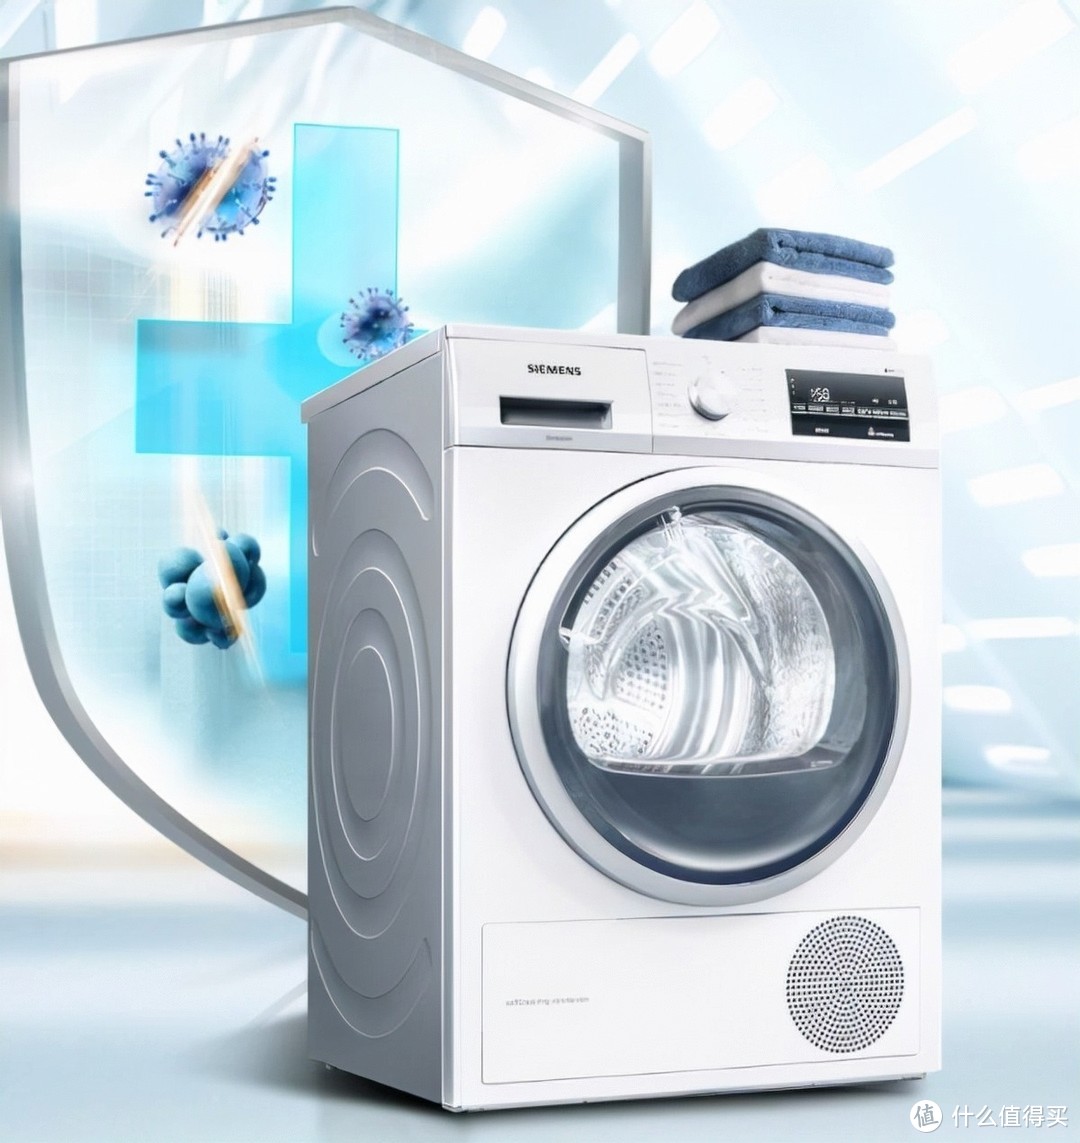 干货分享丨从品牌型号到技术分析，一文教你看懂西门子洗烘套装！附最新优惠活动整理